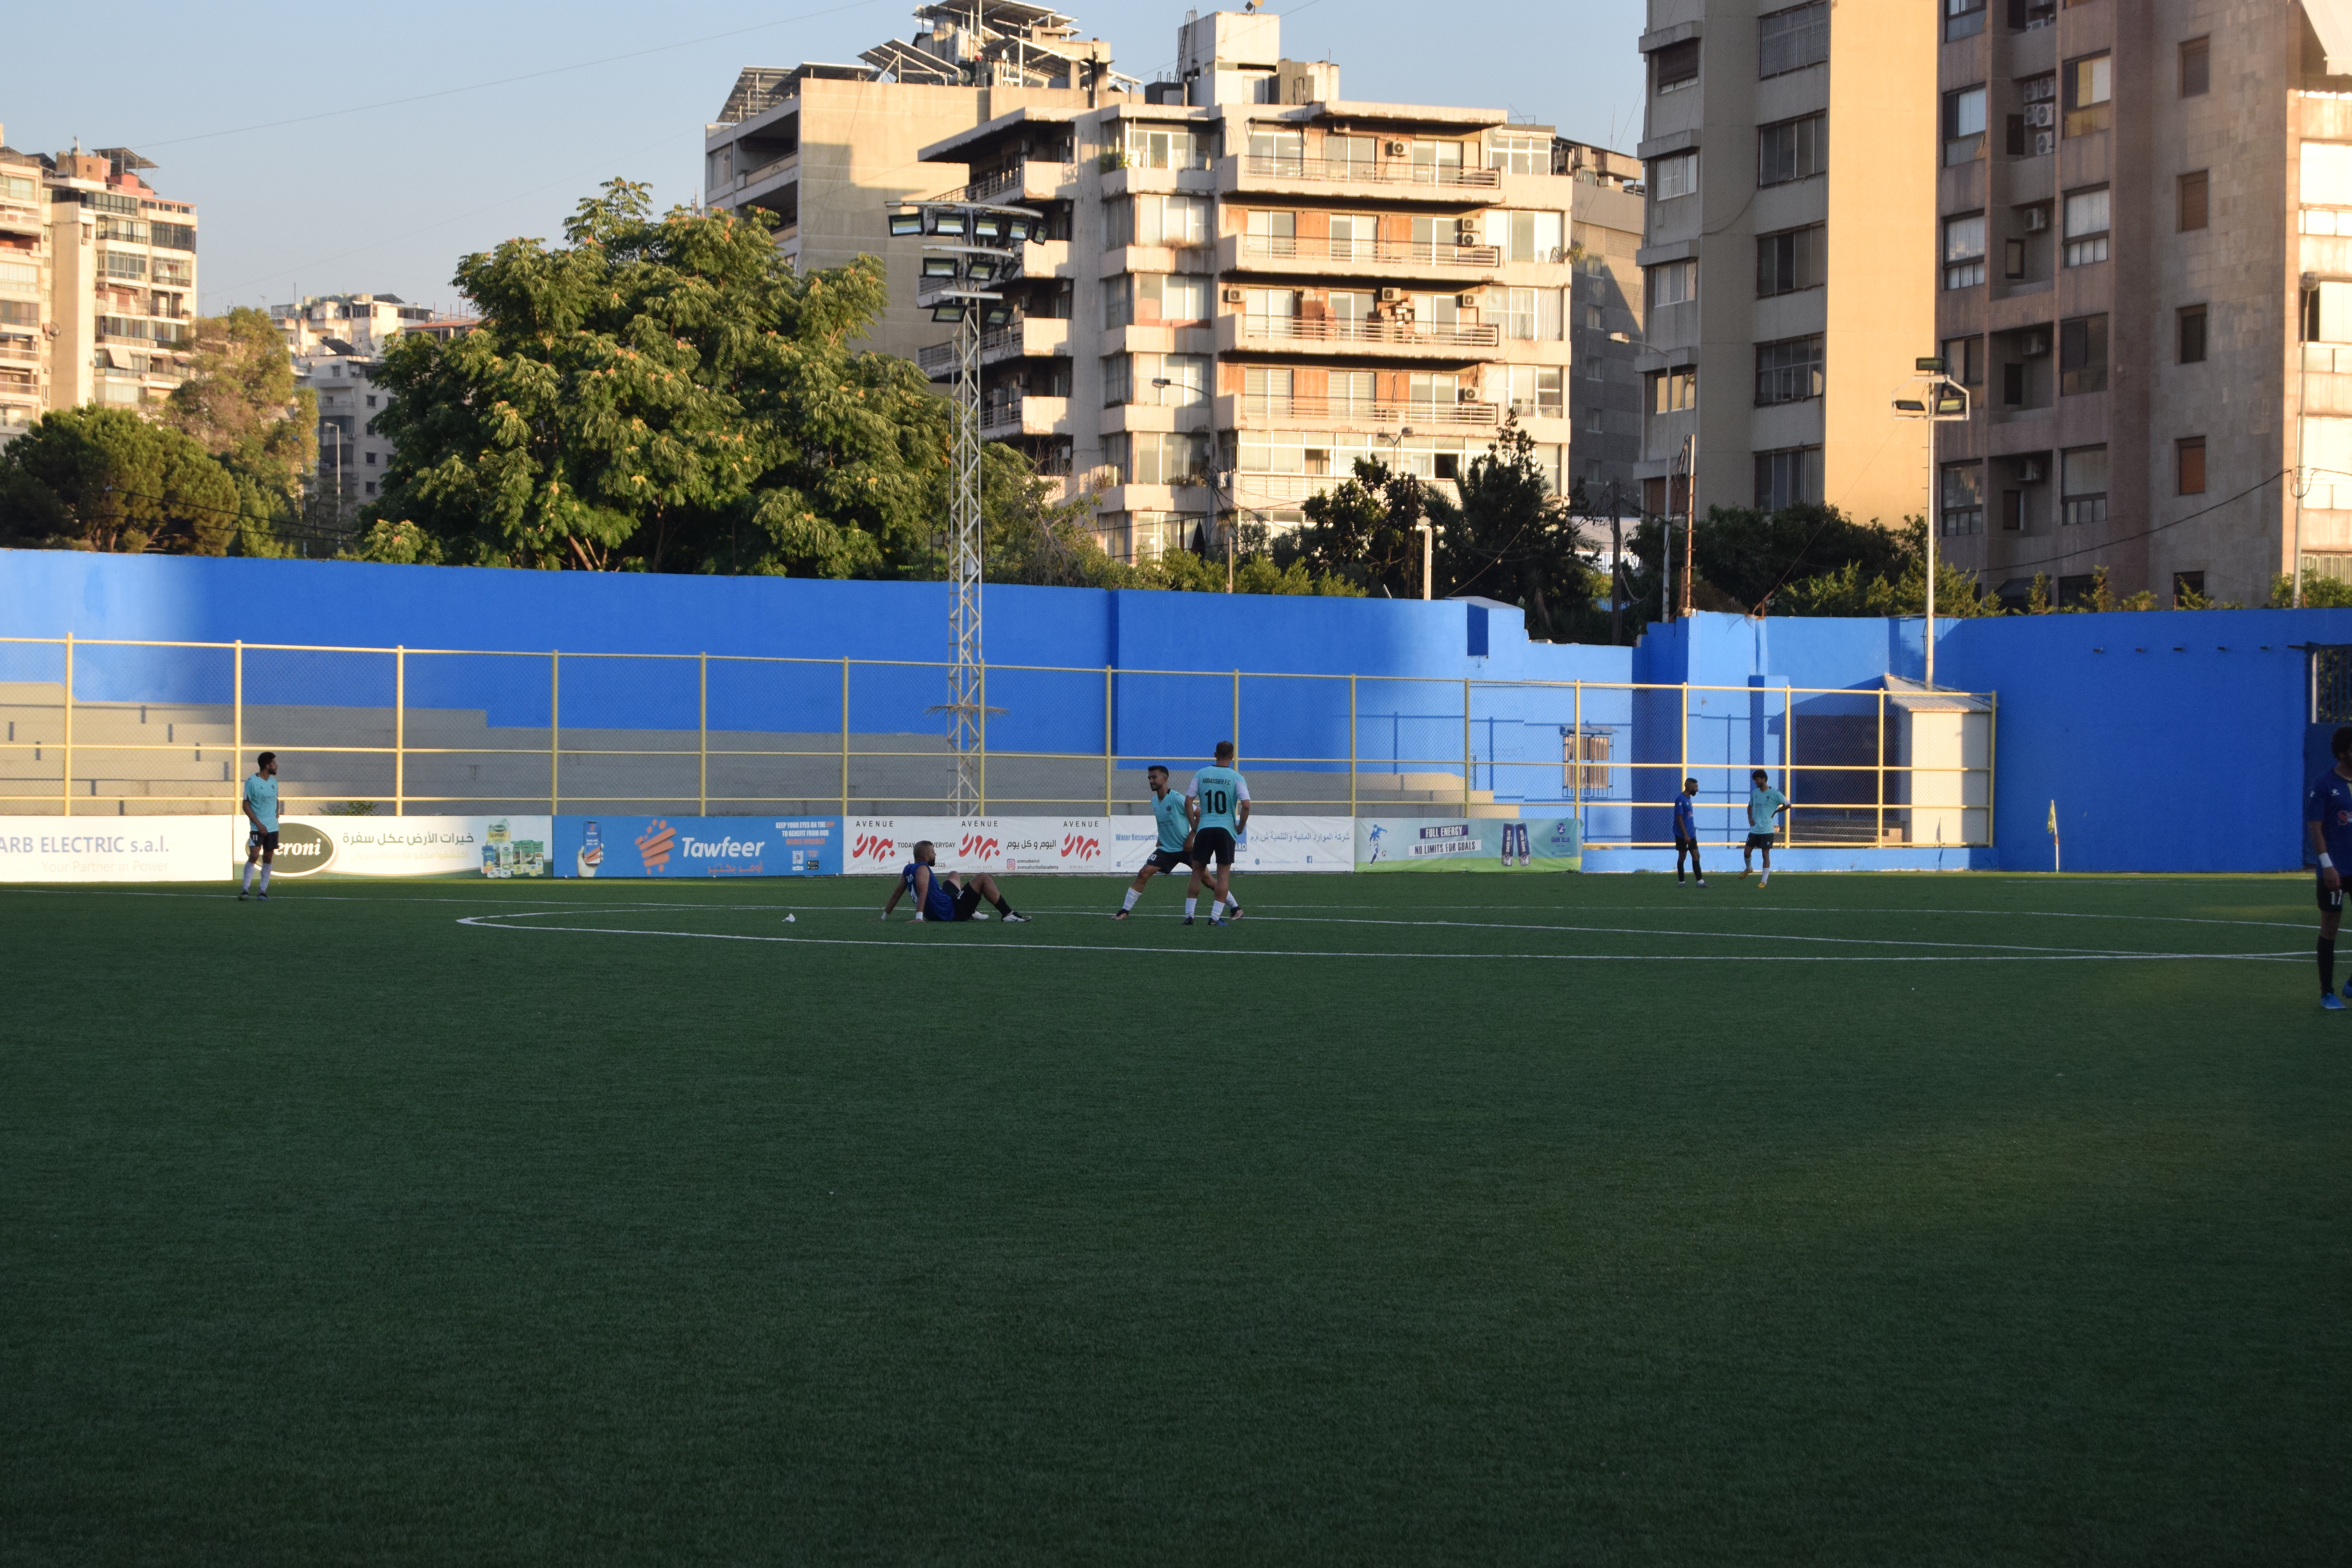 فوز الأنصار على الحكمة 2-1، في الجولة الثانية من الدوري اللبناني، على ملعب طرابلس البلدي.